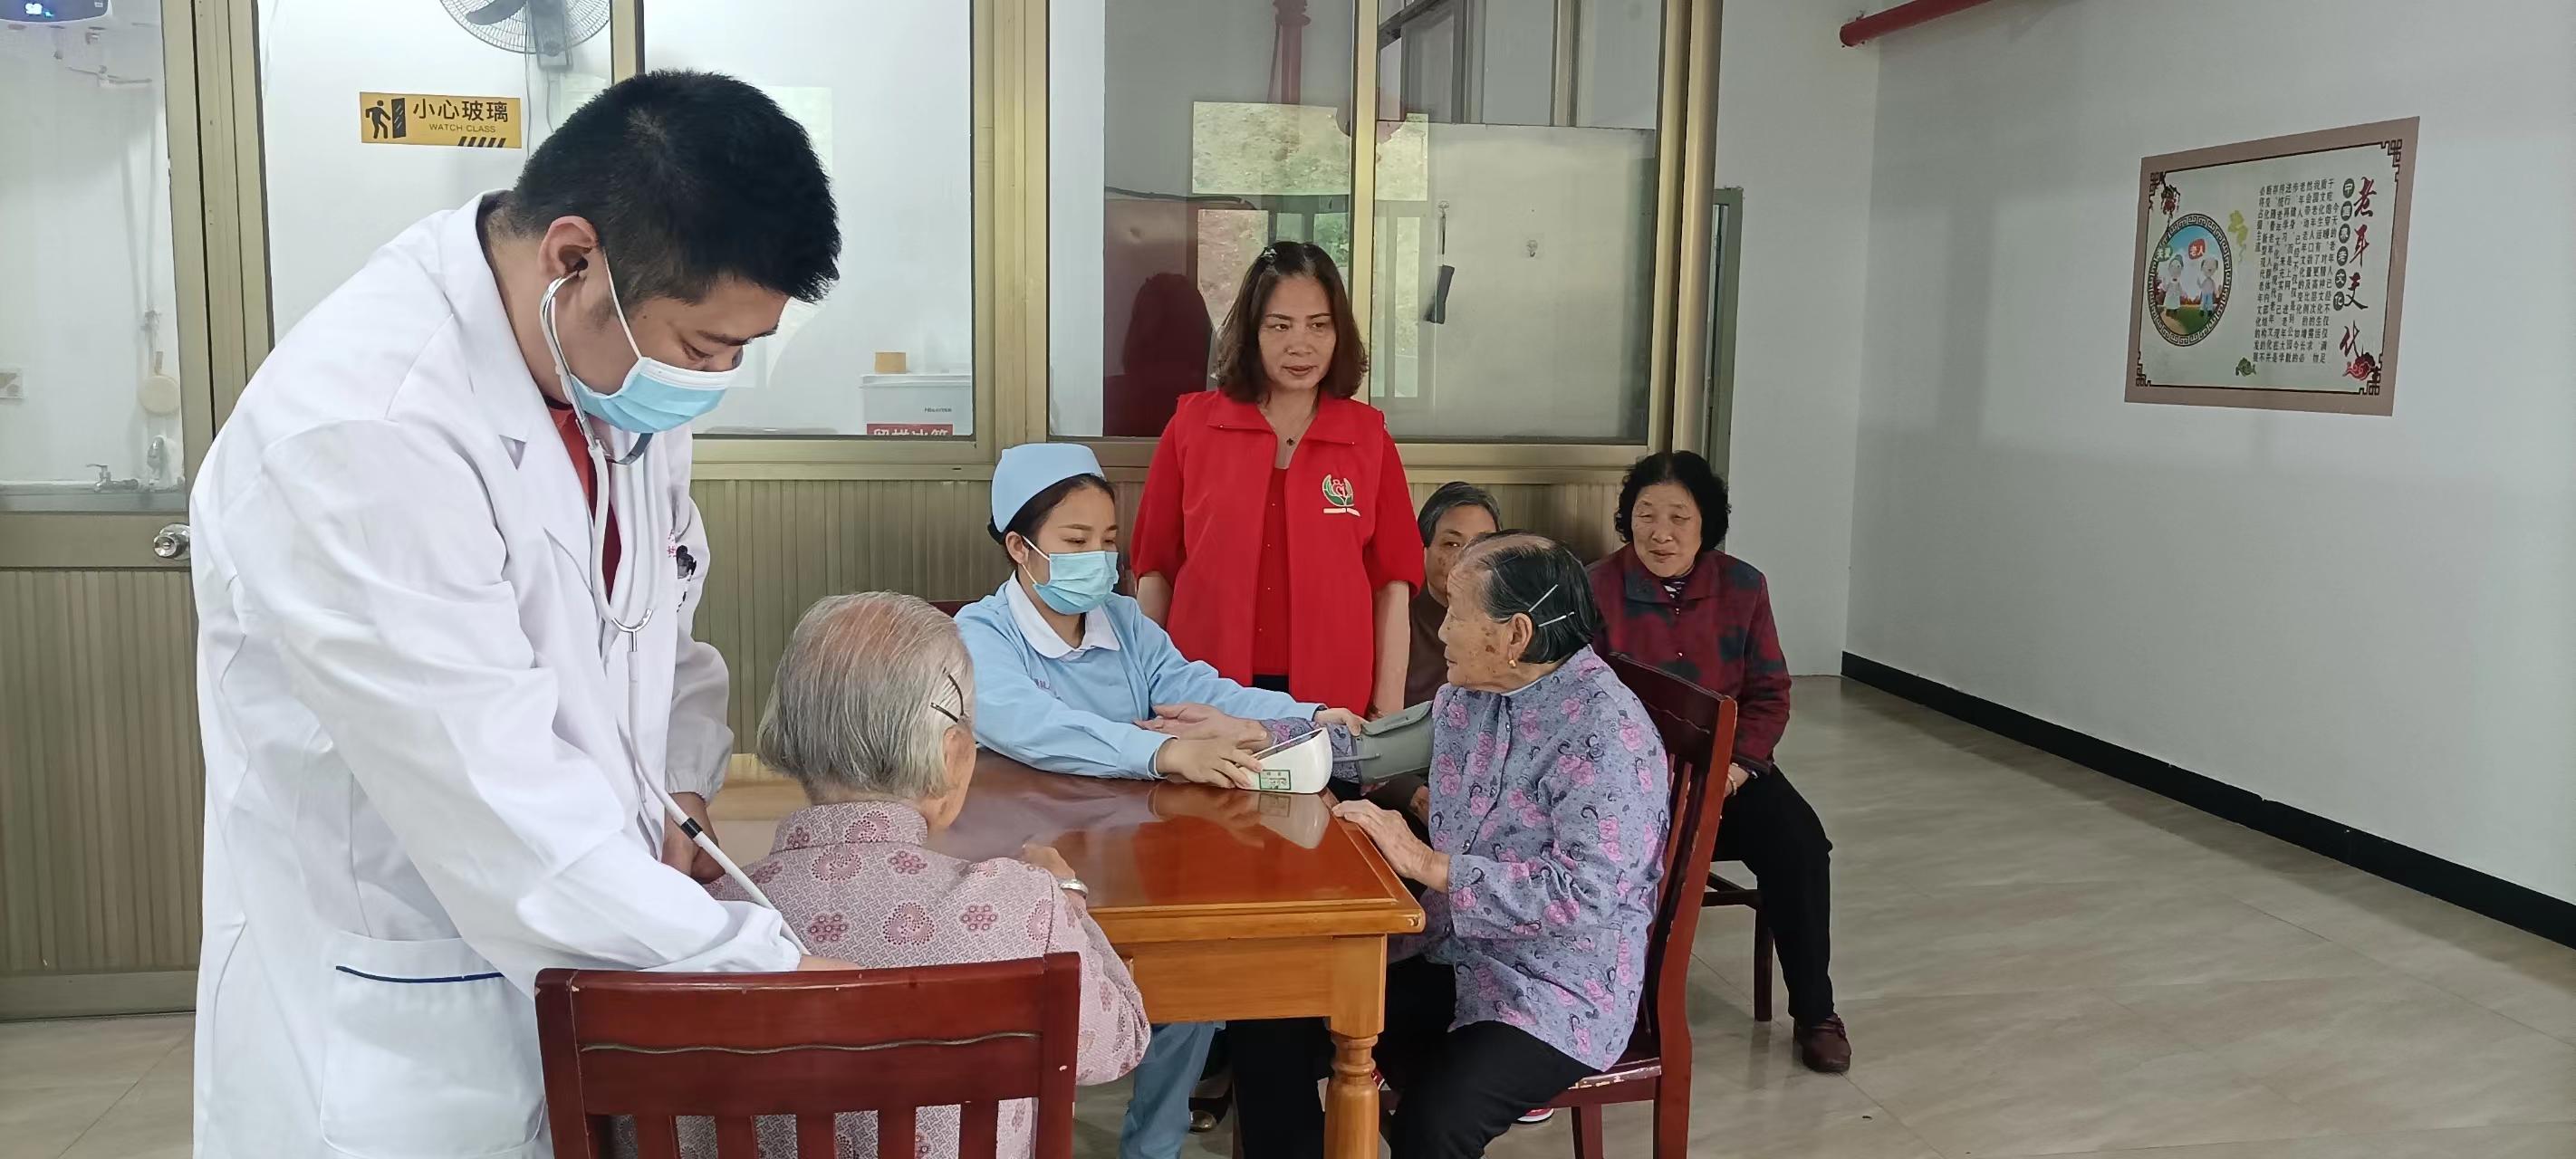 连江苔菉卫生院主治医师林震件在敬老院为老人开展健康体检。连江县融媒体中心供图